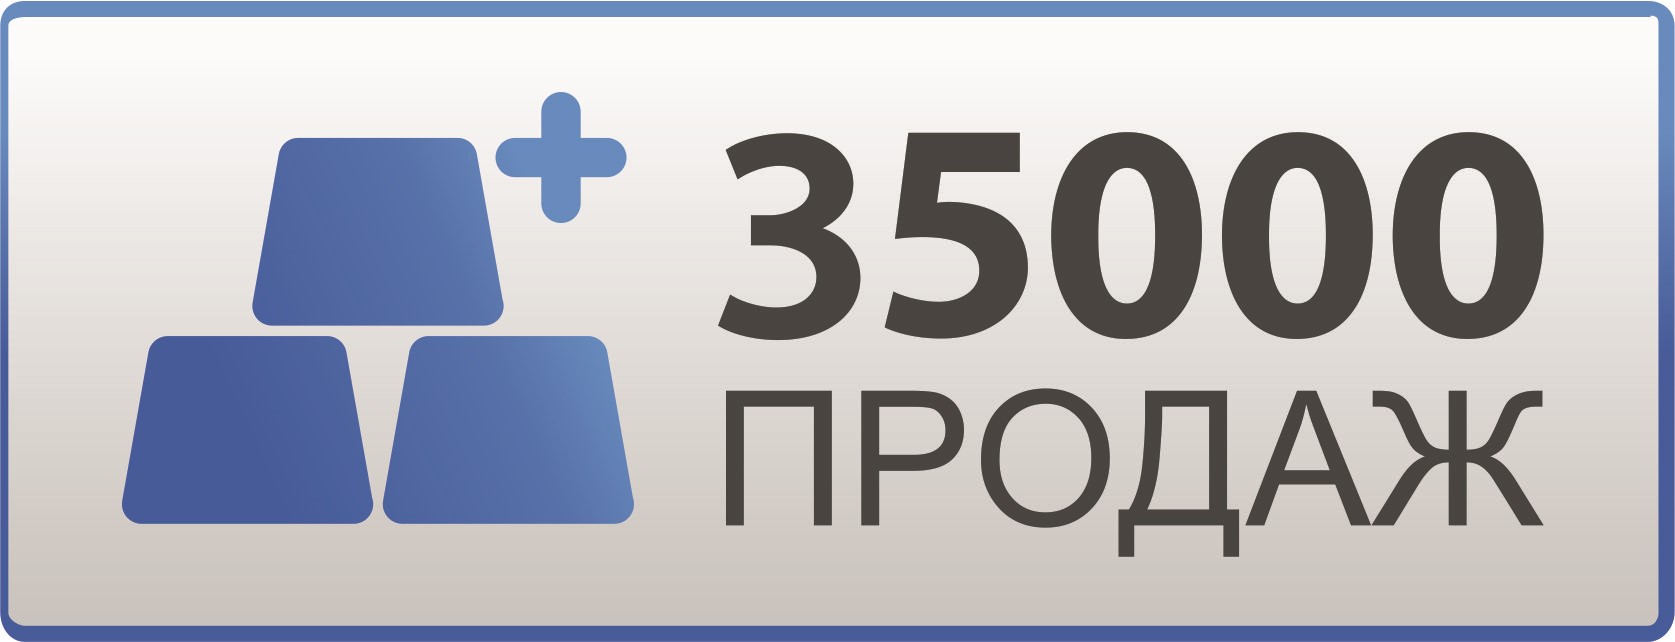 🔥 Yandex Plus Multi subscription for 24 months 🔥💳0